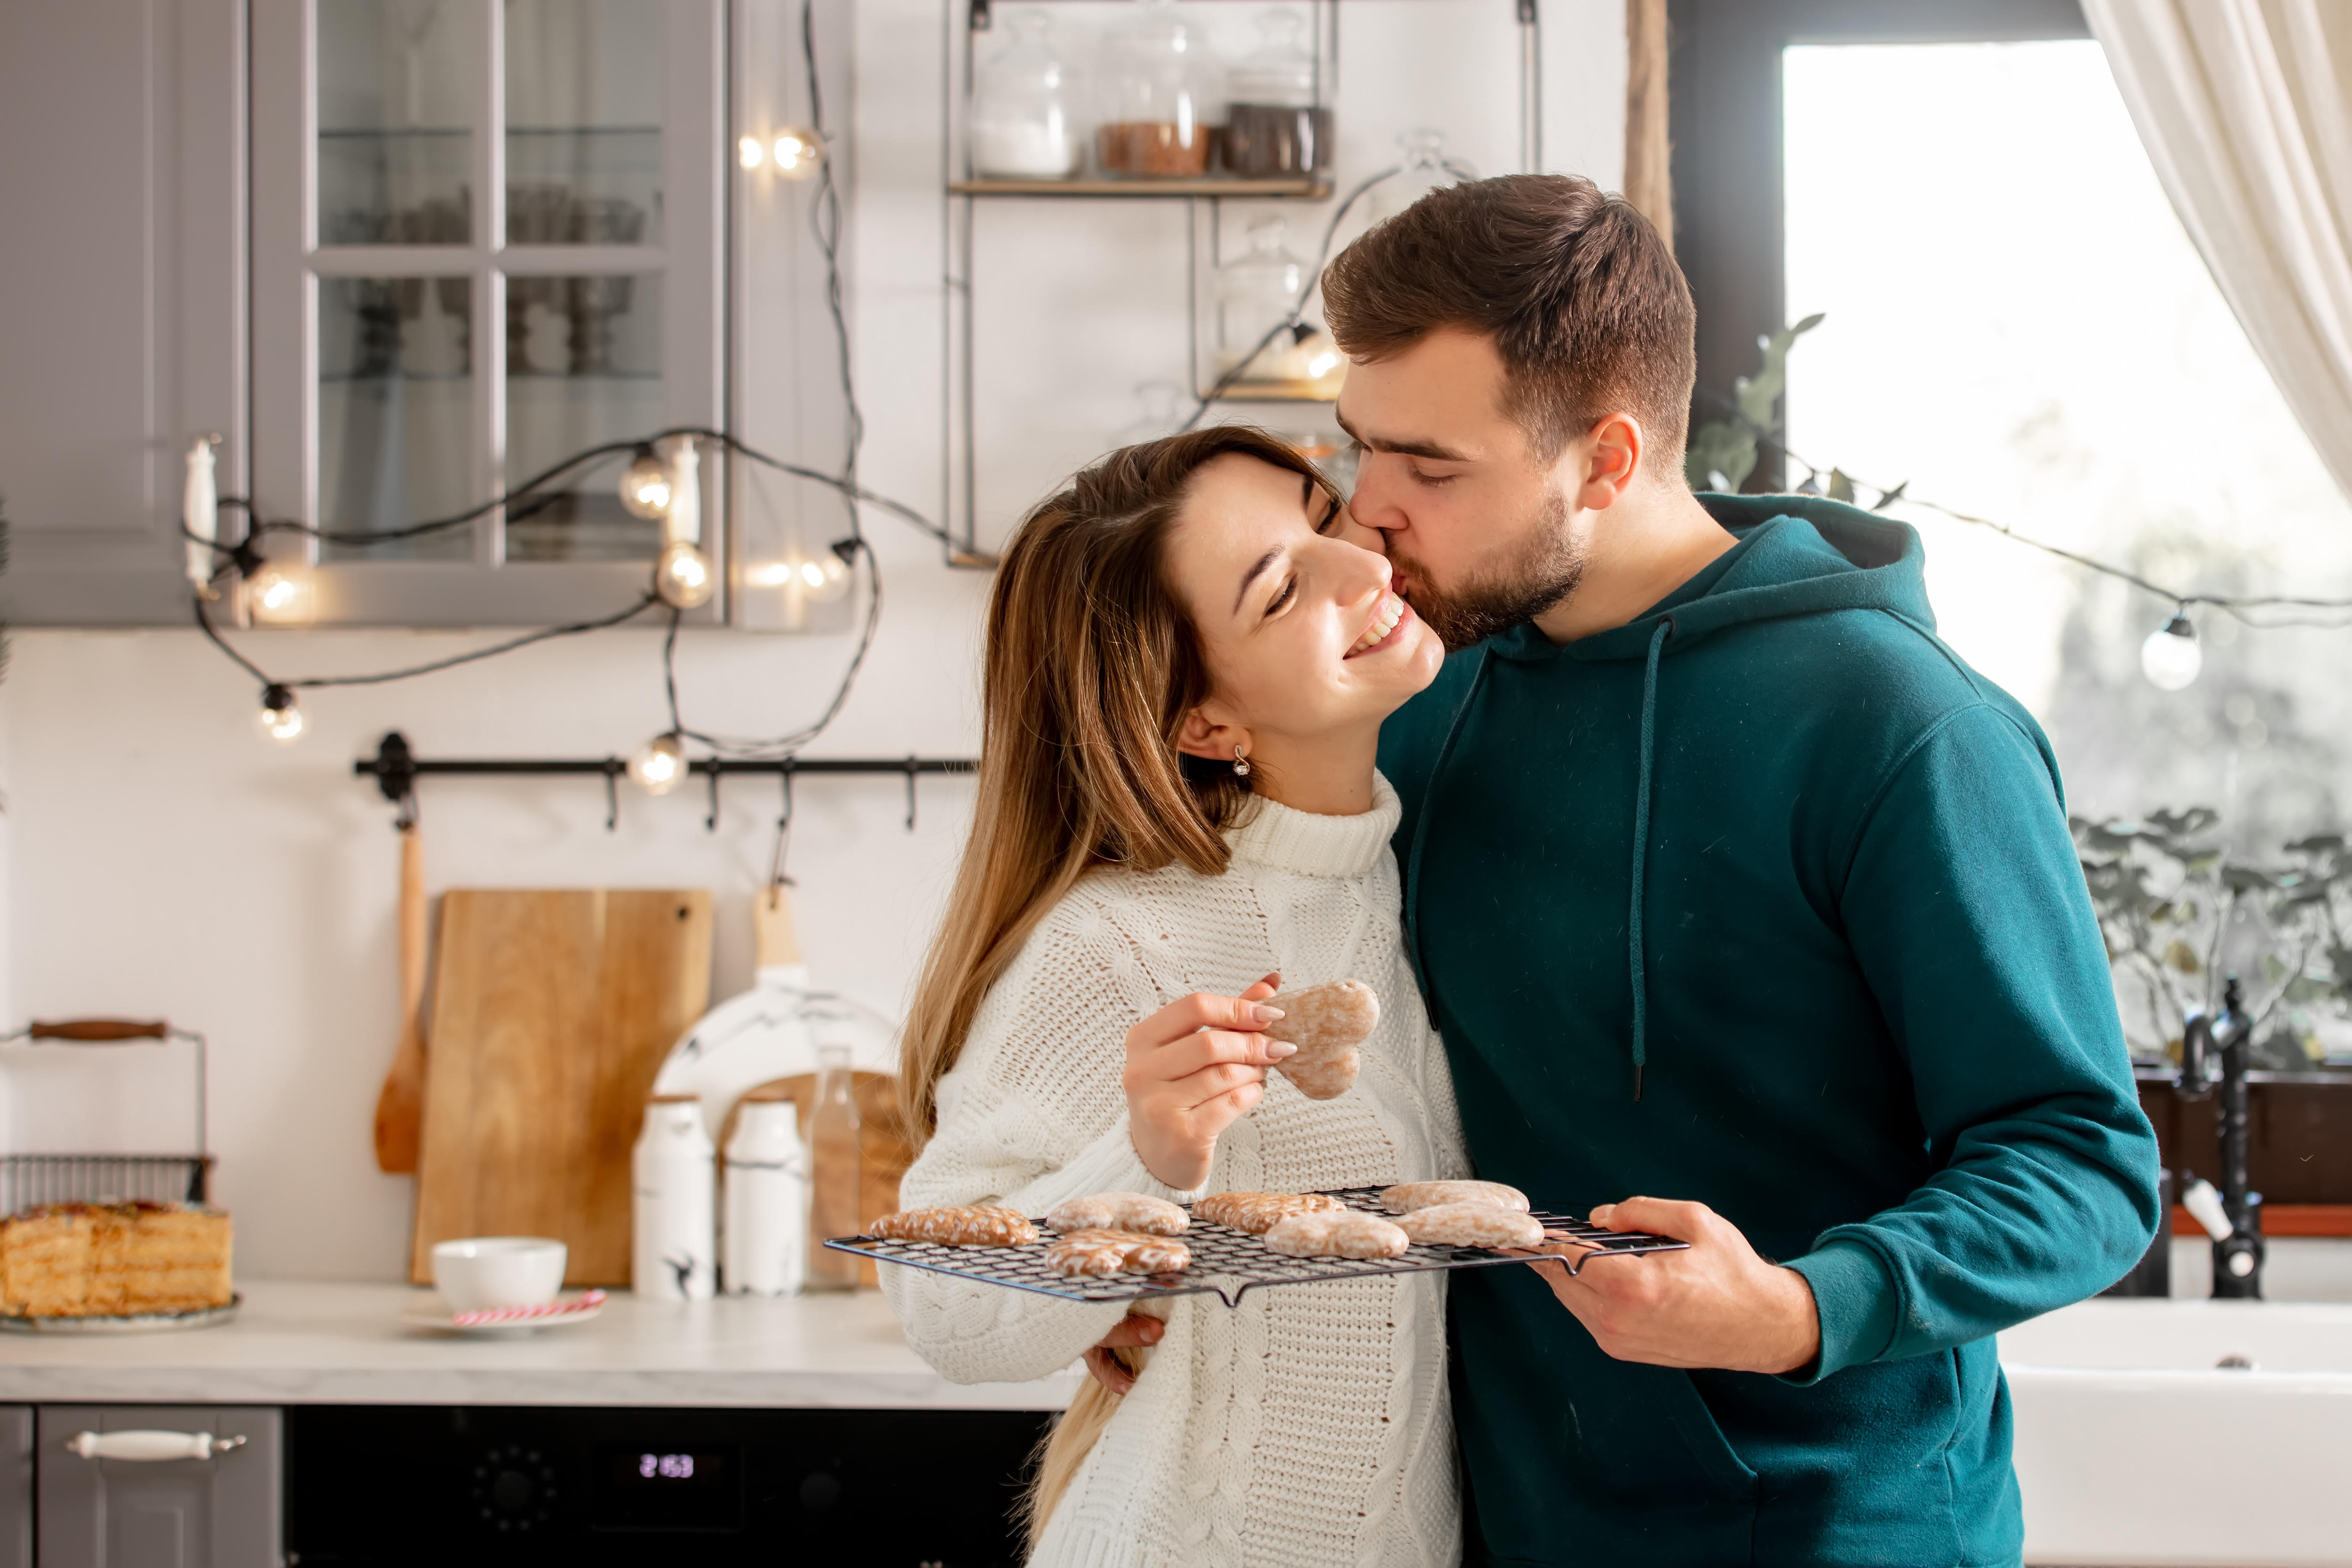 Un homme qui embrasse sa femme tout en préparant des biscuits à la maison | Source : Shutterstock